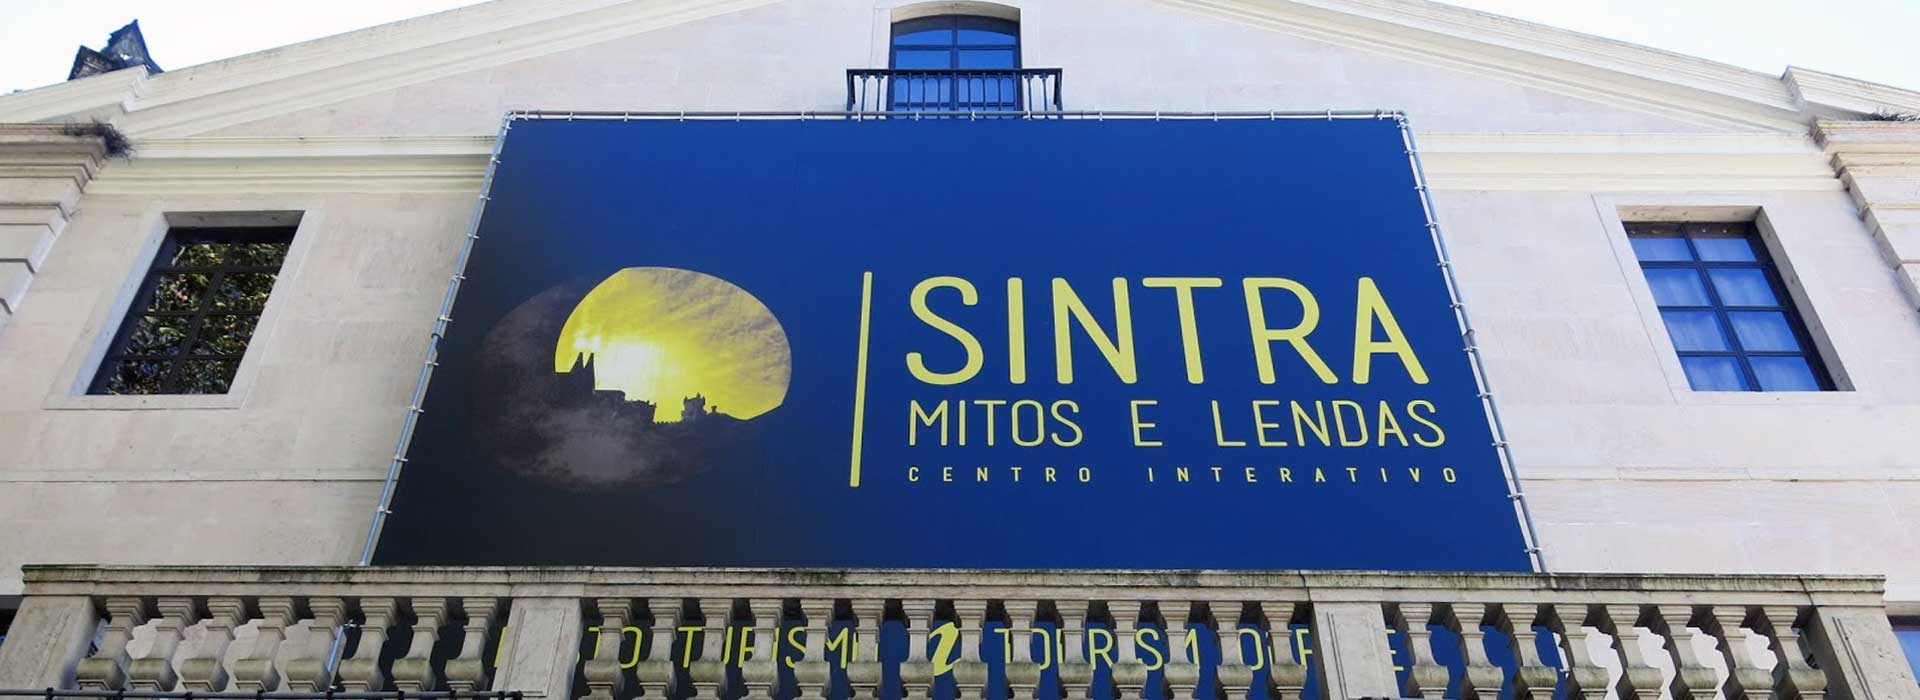 Sintra Myths and Legends (mitos e lendas) Interpretative Centre